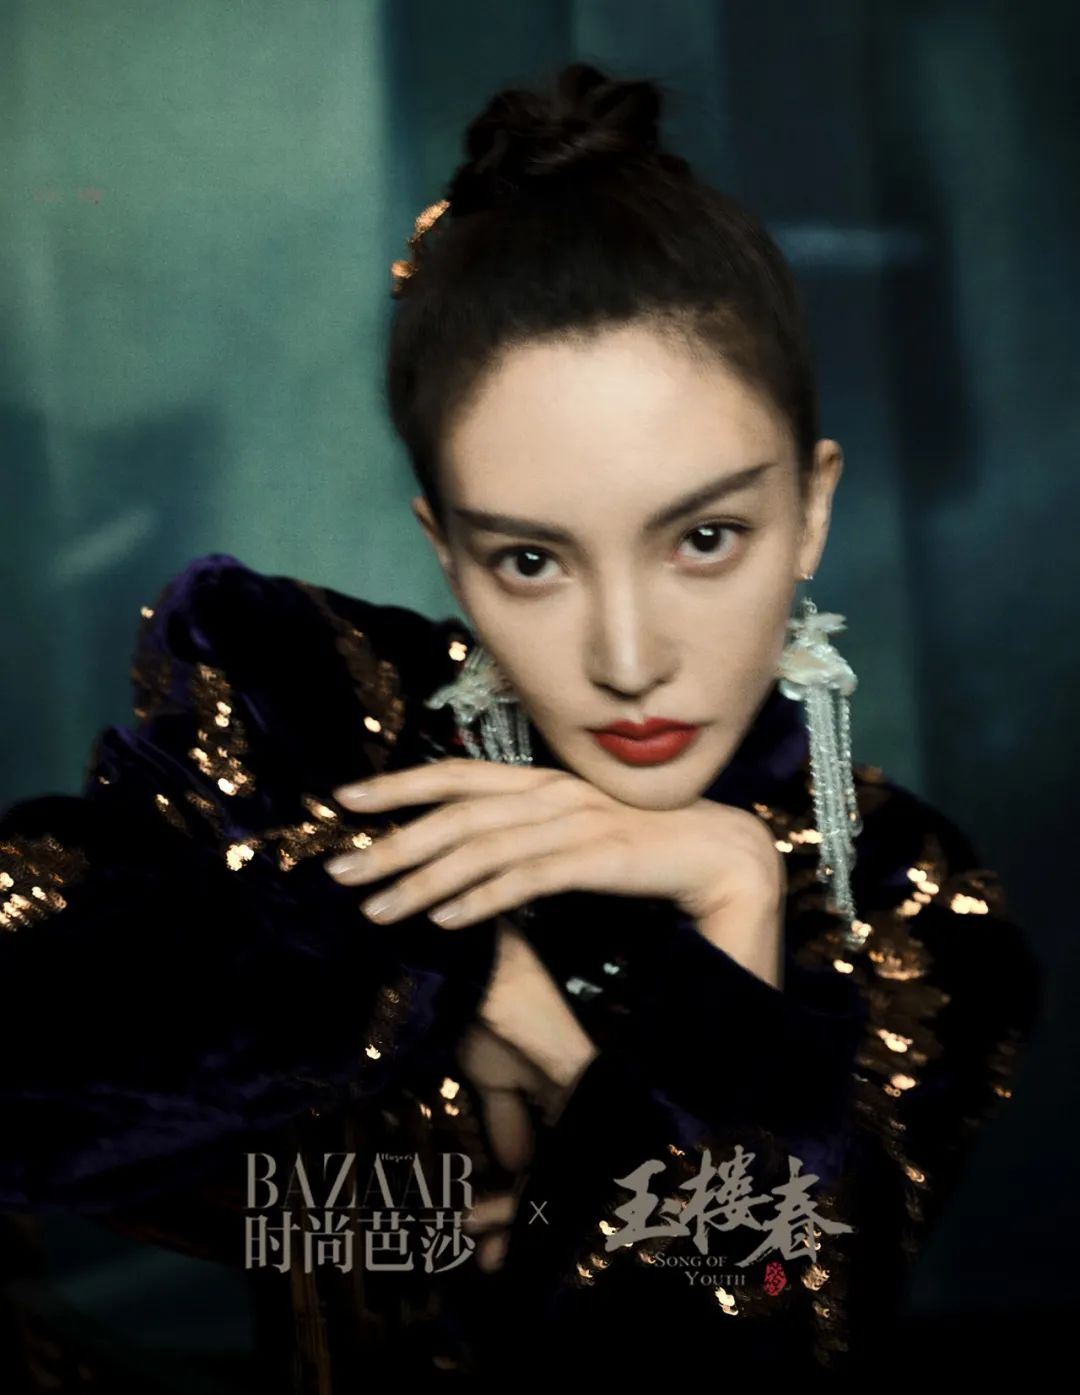 BazaarVStar |《玉楼春》：美人如玉，绘就百态春色